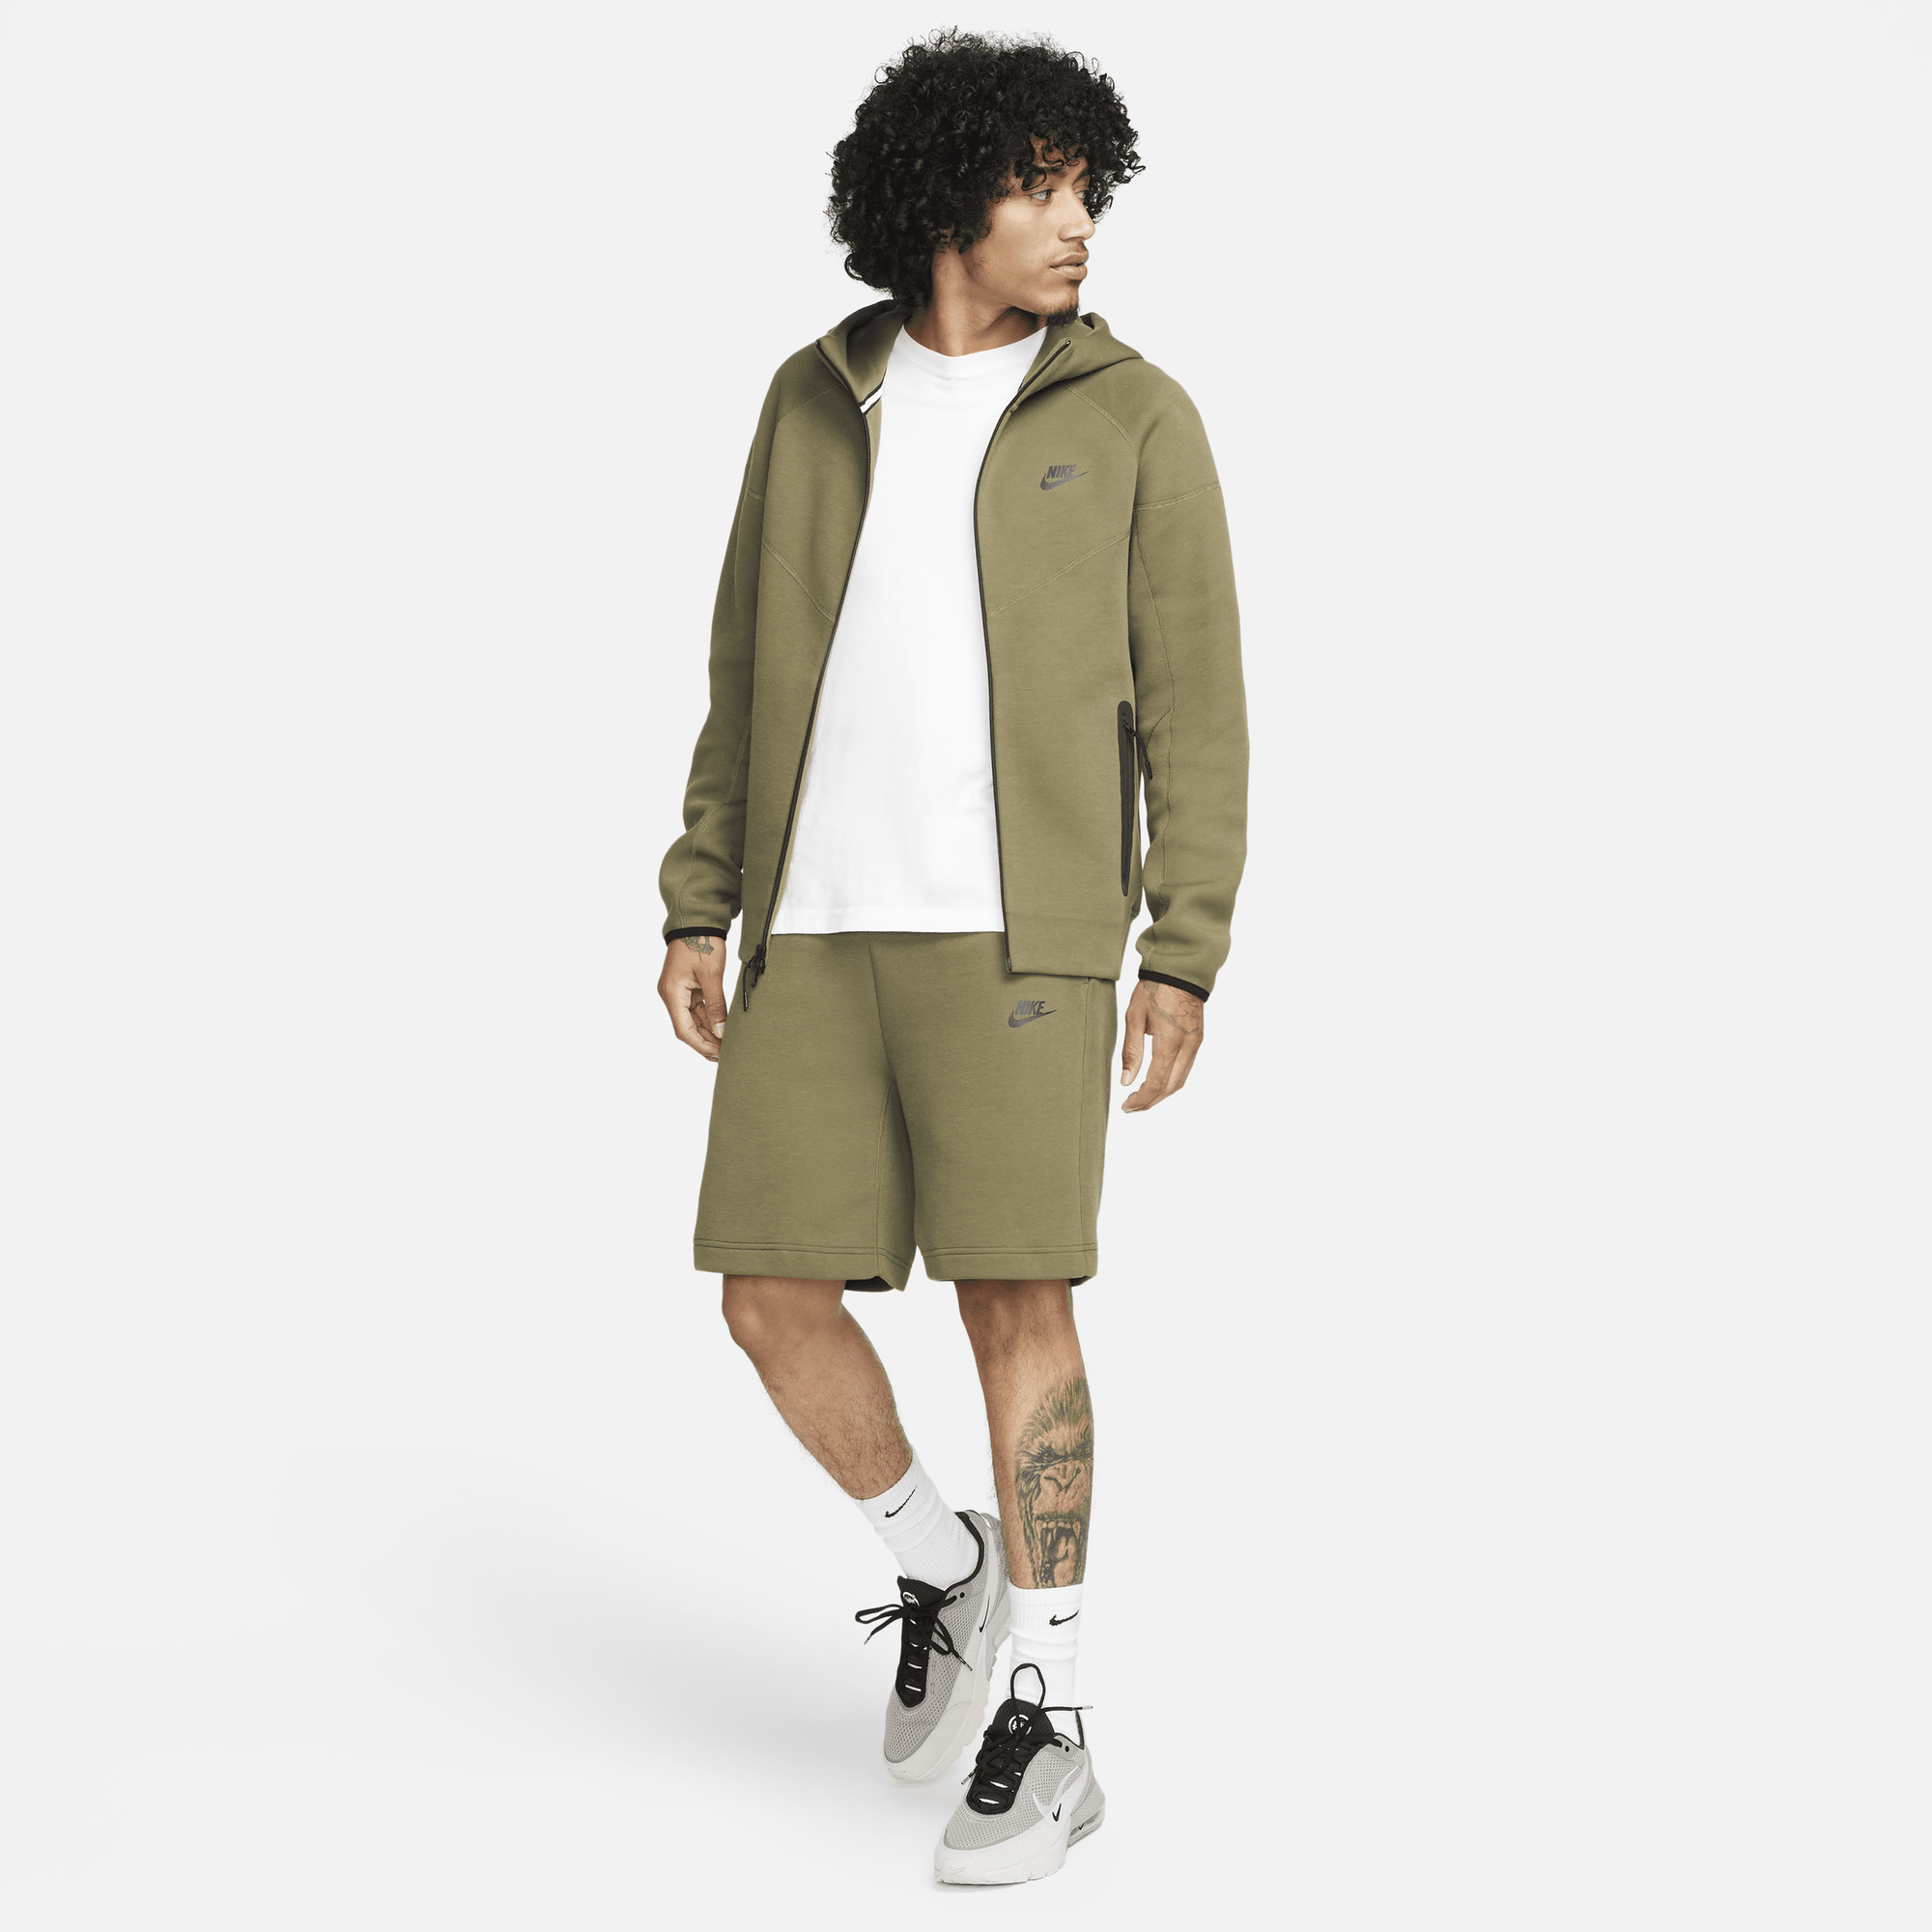 Buy Nike Sportswear Tech Fleece Windrunner Men's Full-Zip Hoodie 